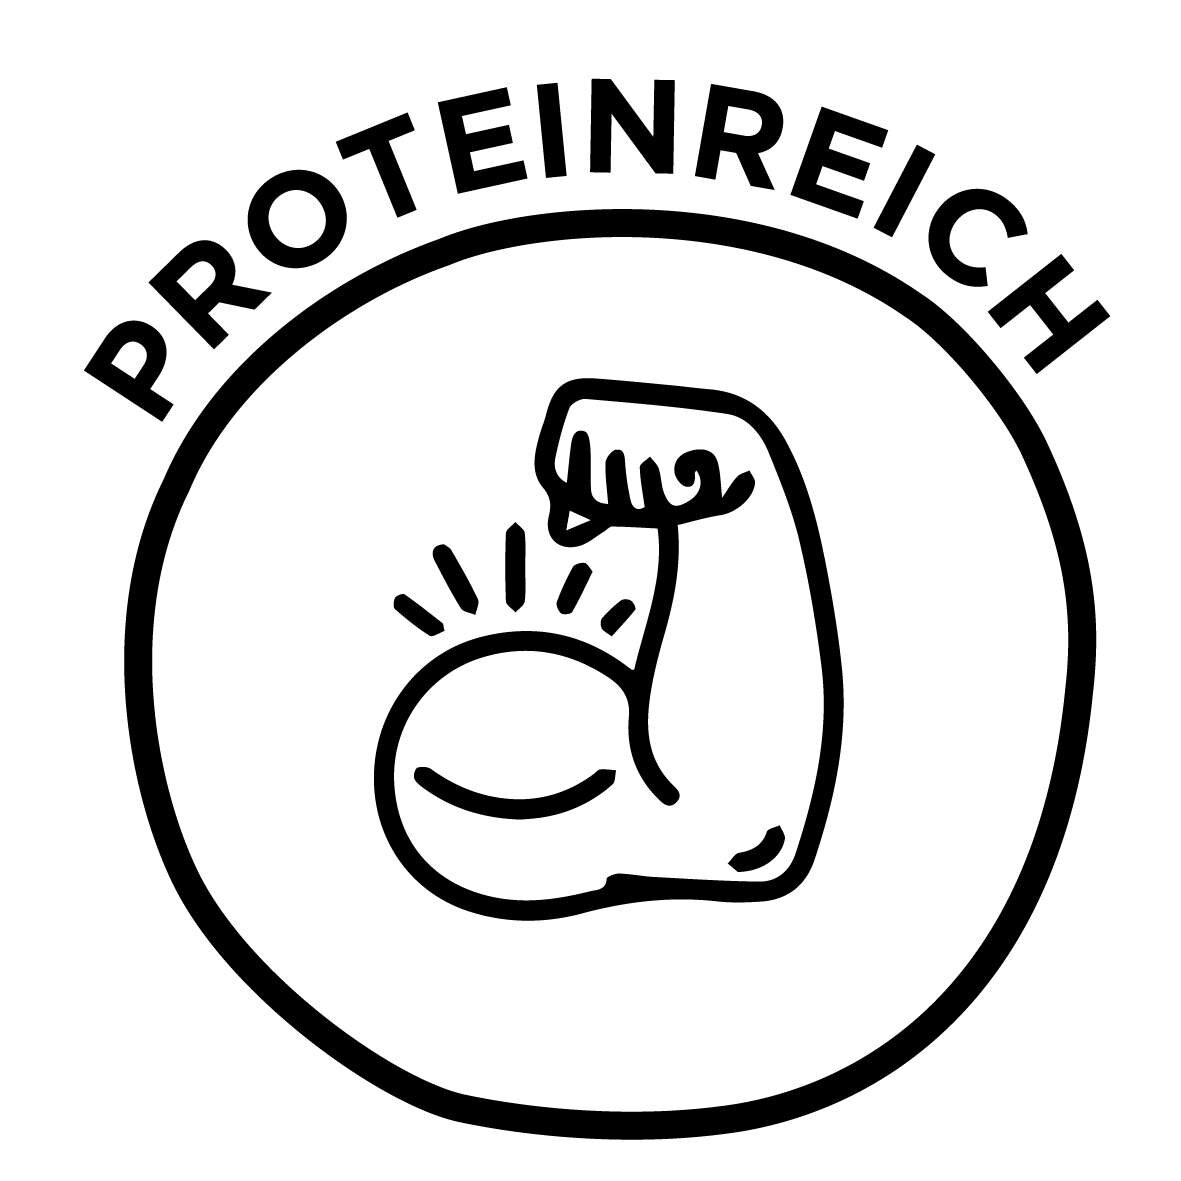 Proteinreich